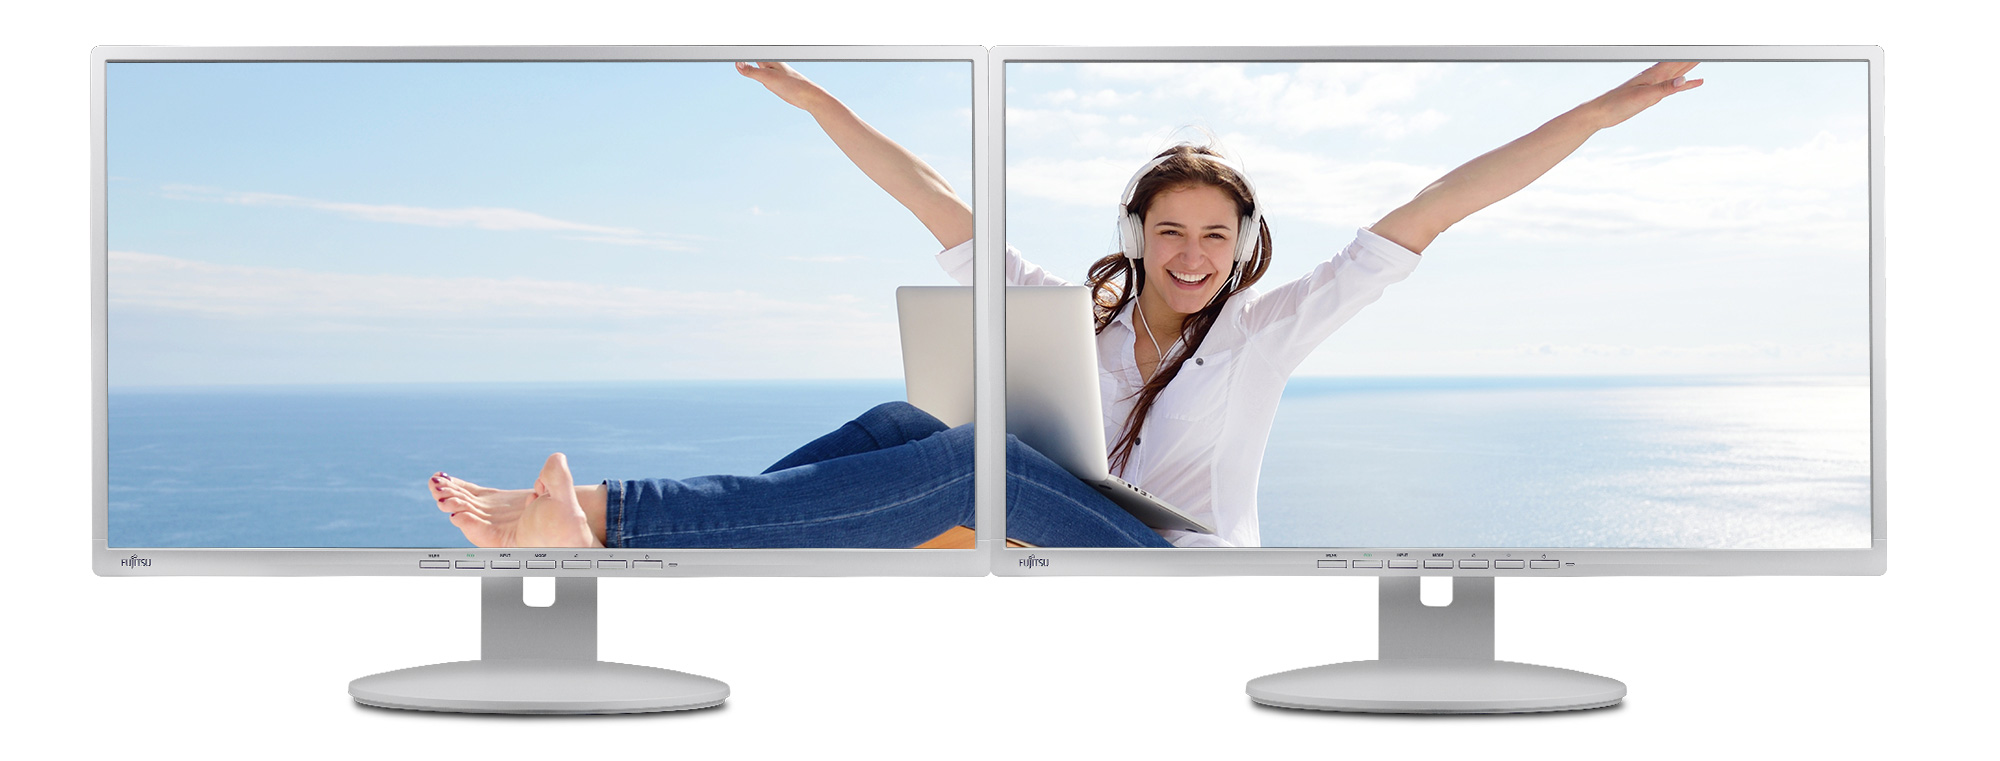 Zwei Fujitsu Display B27-8 TE Pro Monitore nebeneinander sind ein häufiger Anblick in vielen Firmen.